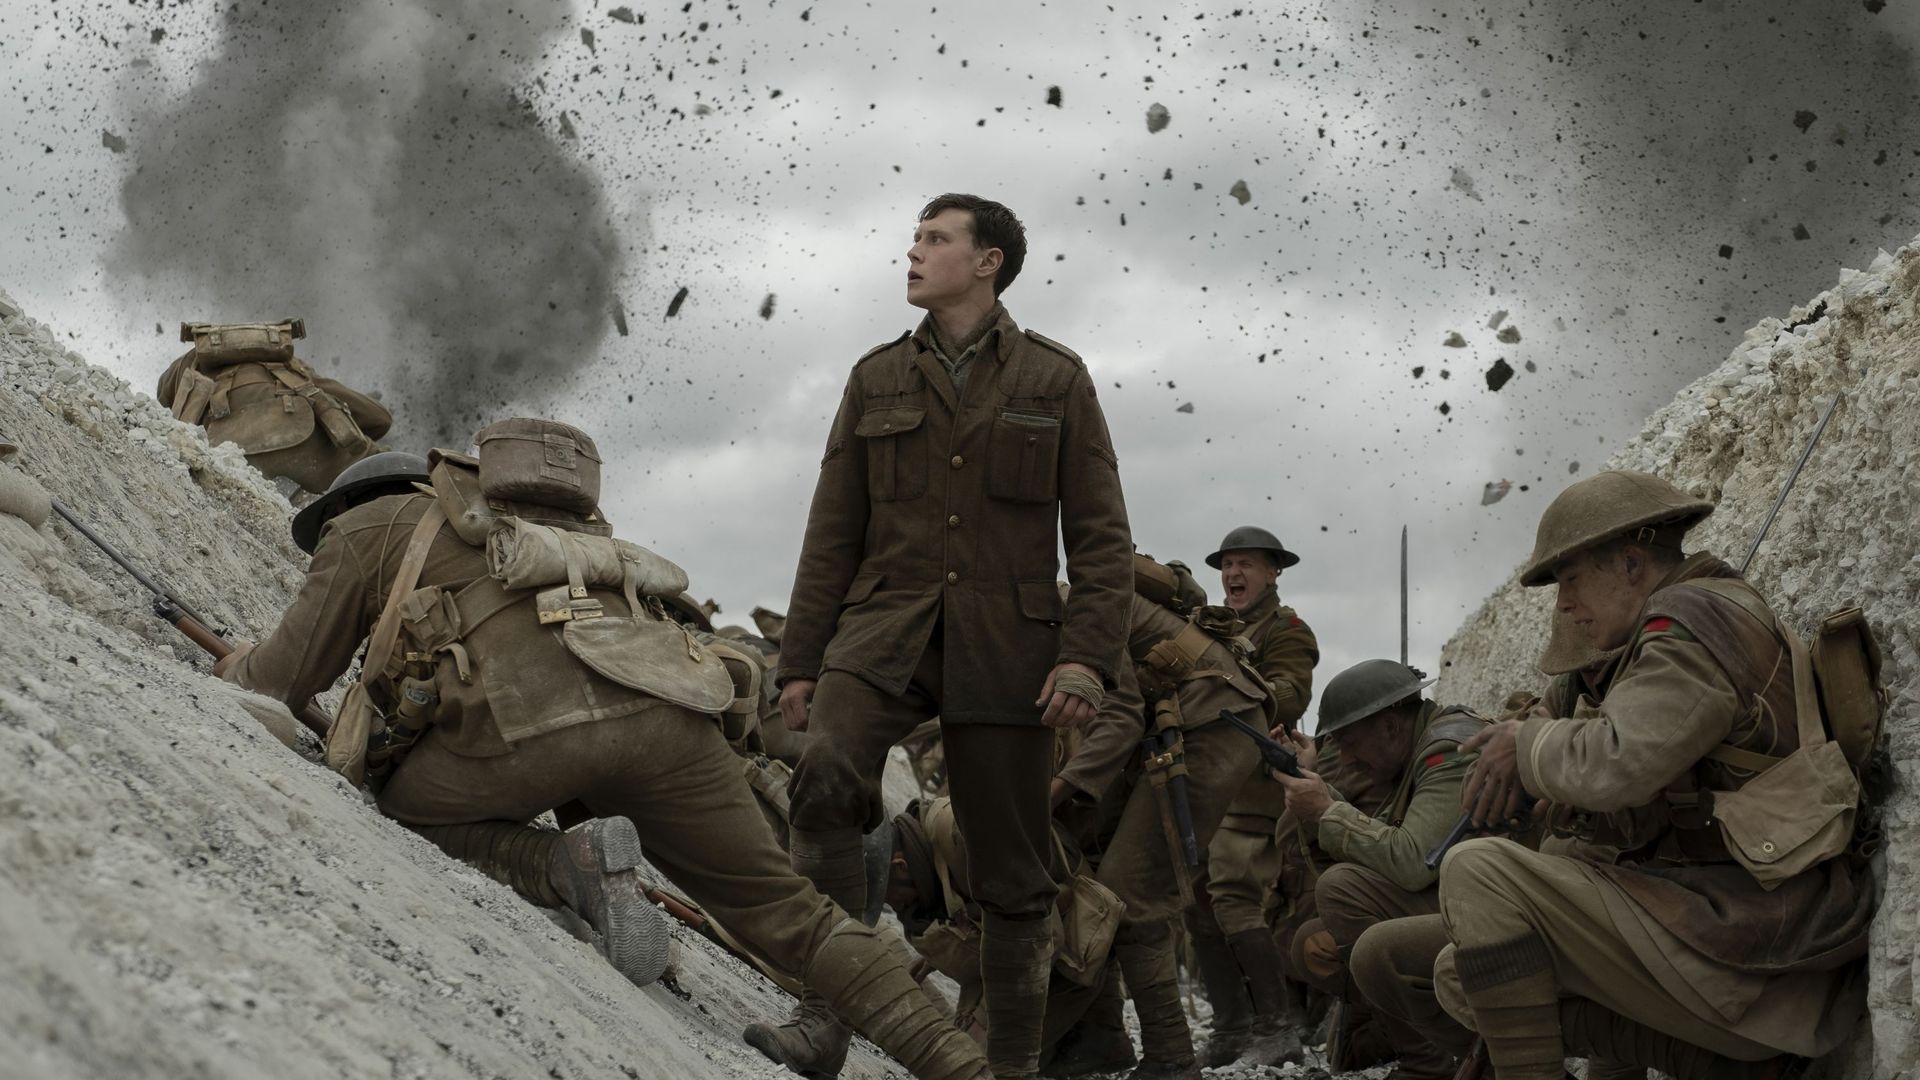 Sam Mendes donne un premier aperçu de son film de guerre "1917"